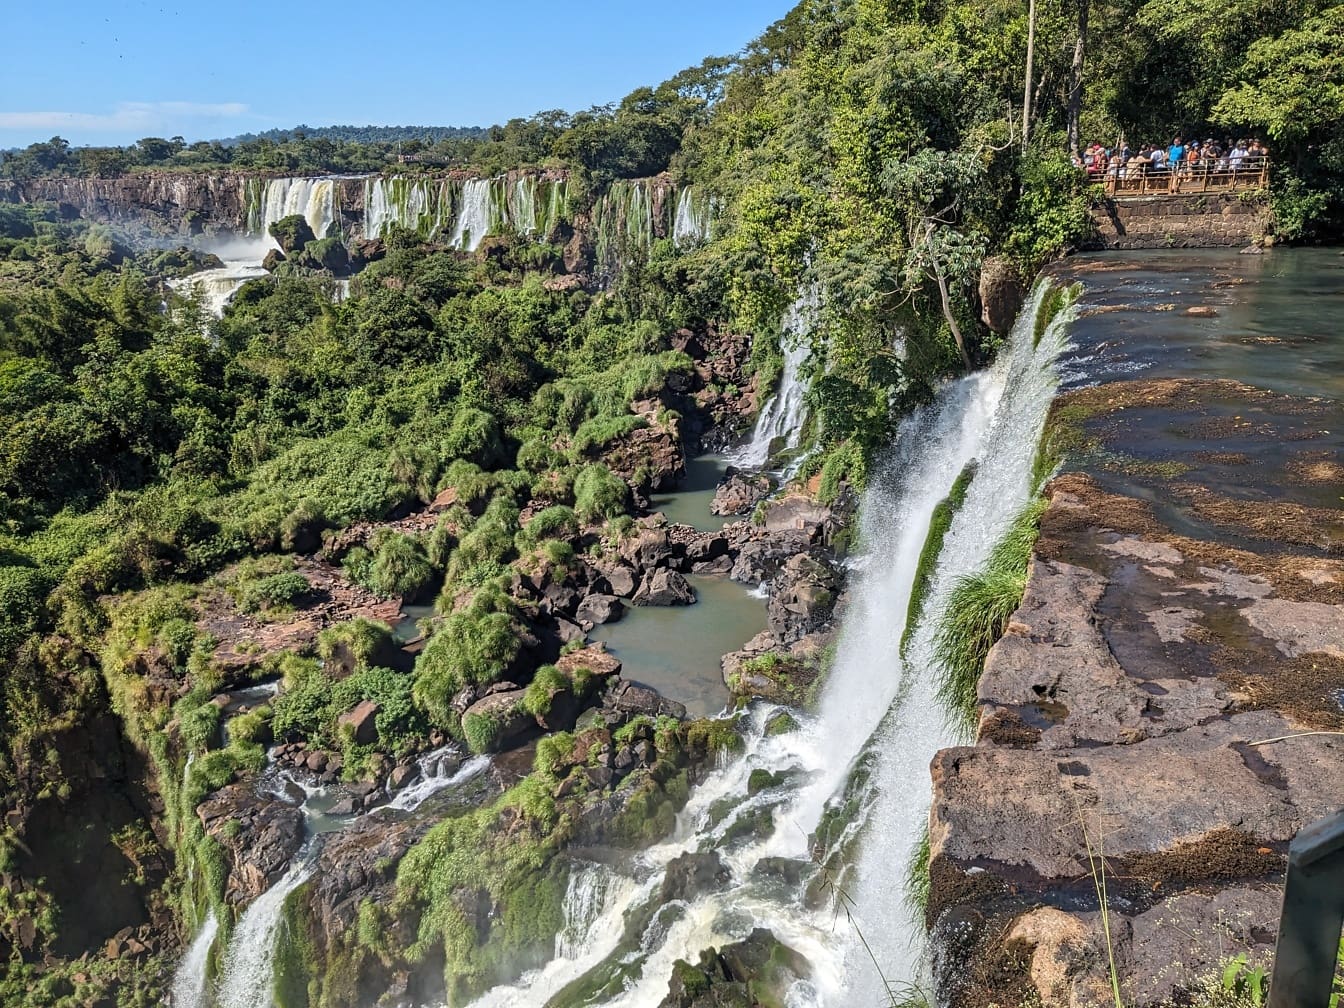 Rub vodopada na rijeci Iguazu u Argentini, poznata turistička atrakcija